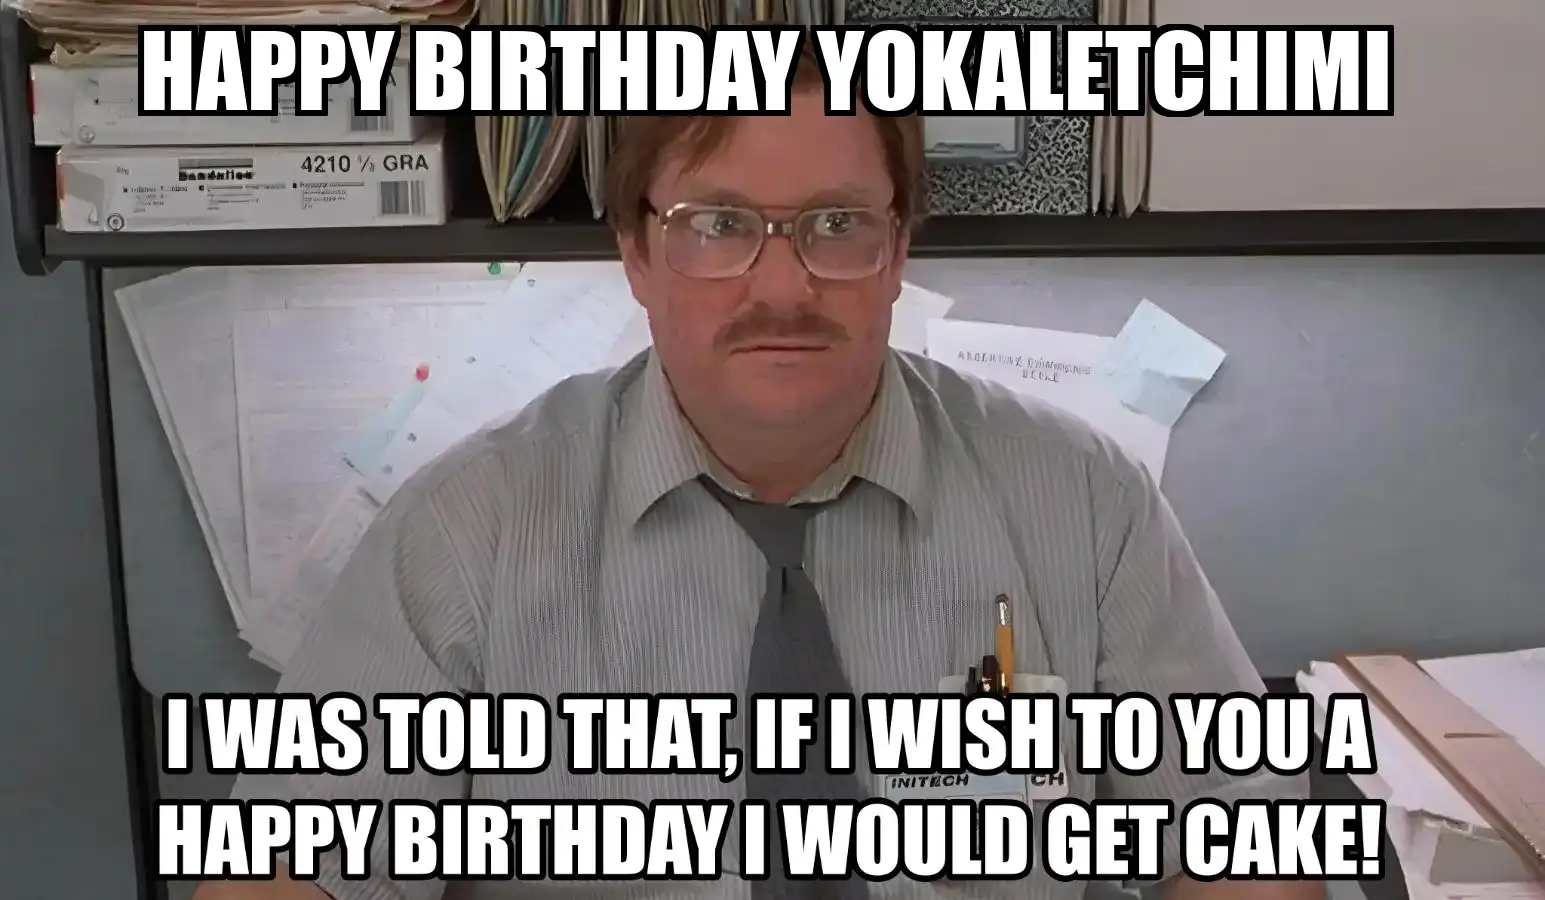 Happy Birthday Yokaletchimi I Would Get A Cake Meme